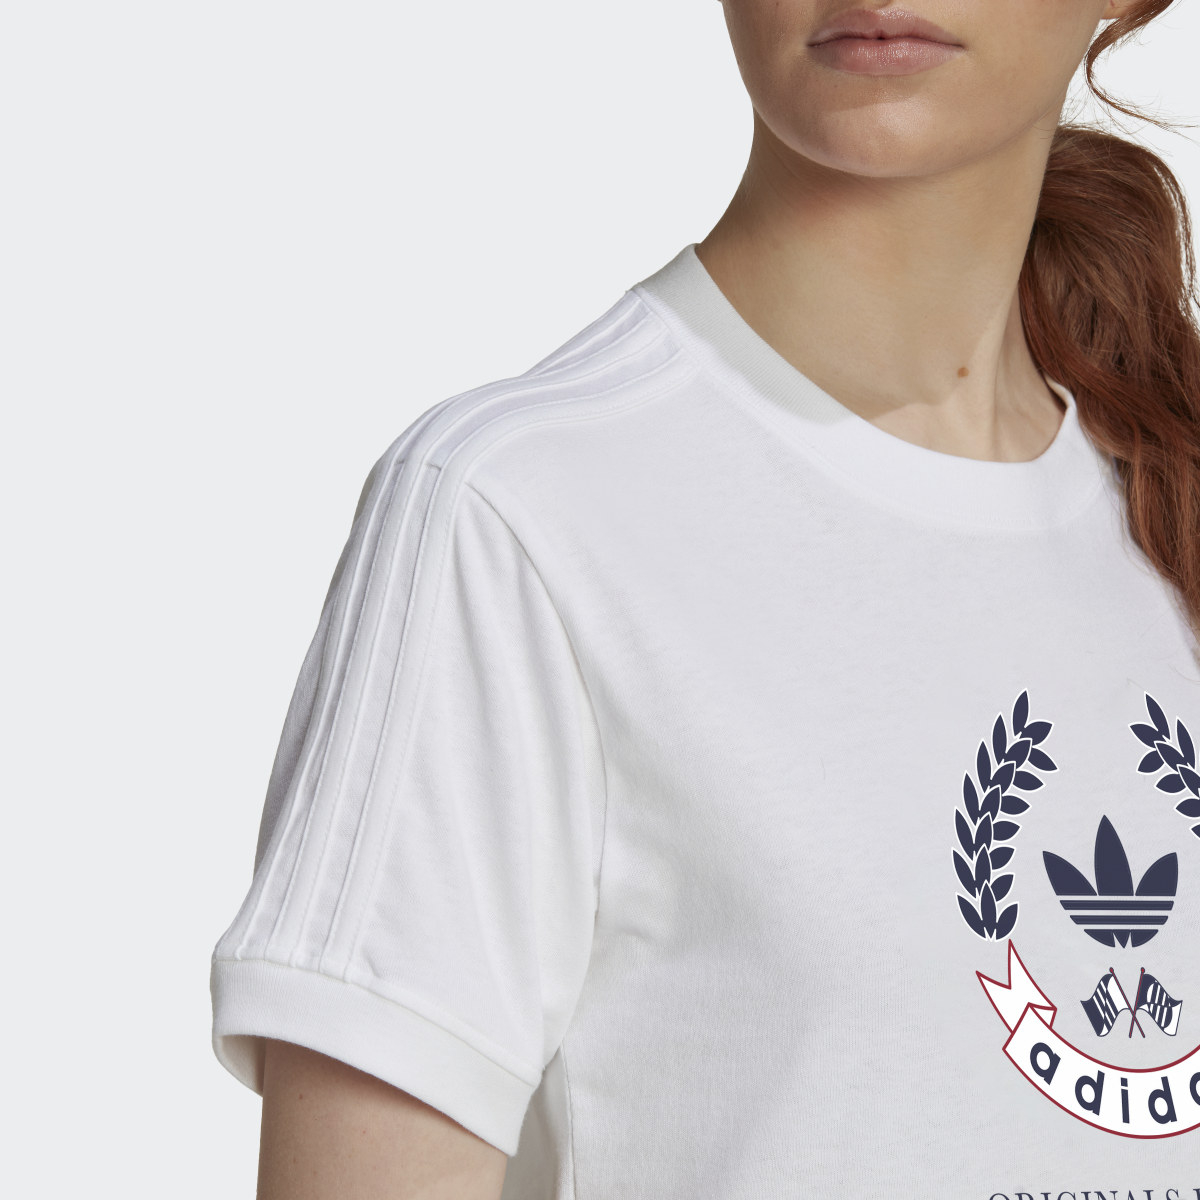 Adidas T-shirt com Emblema. 6